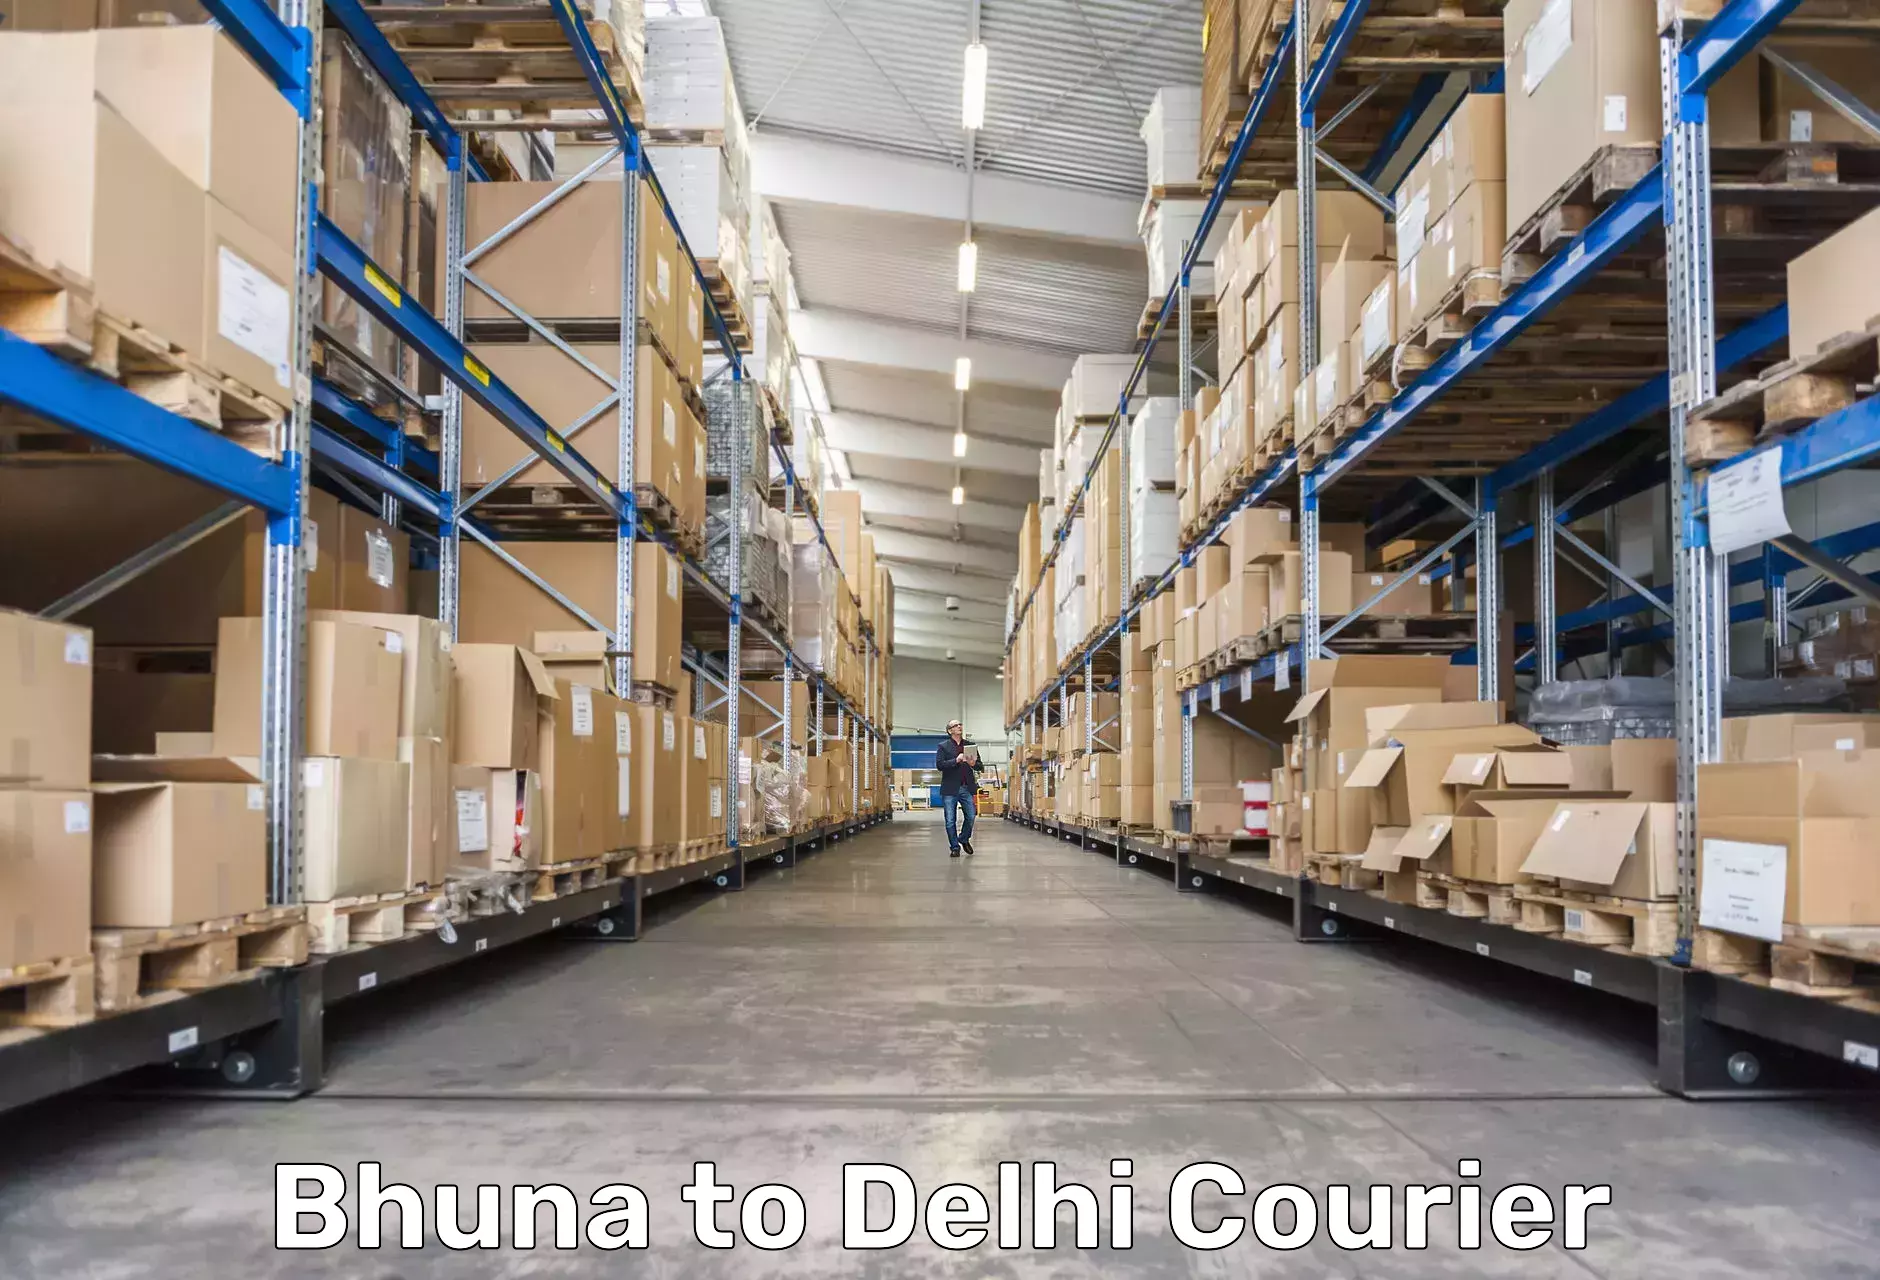 Global logistics network Bhuna to East Delhi